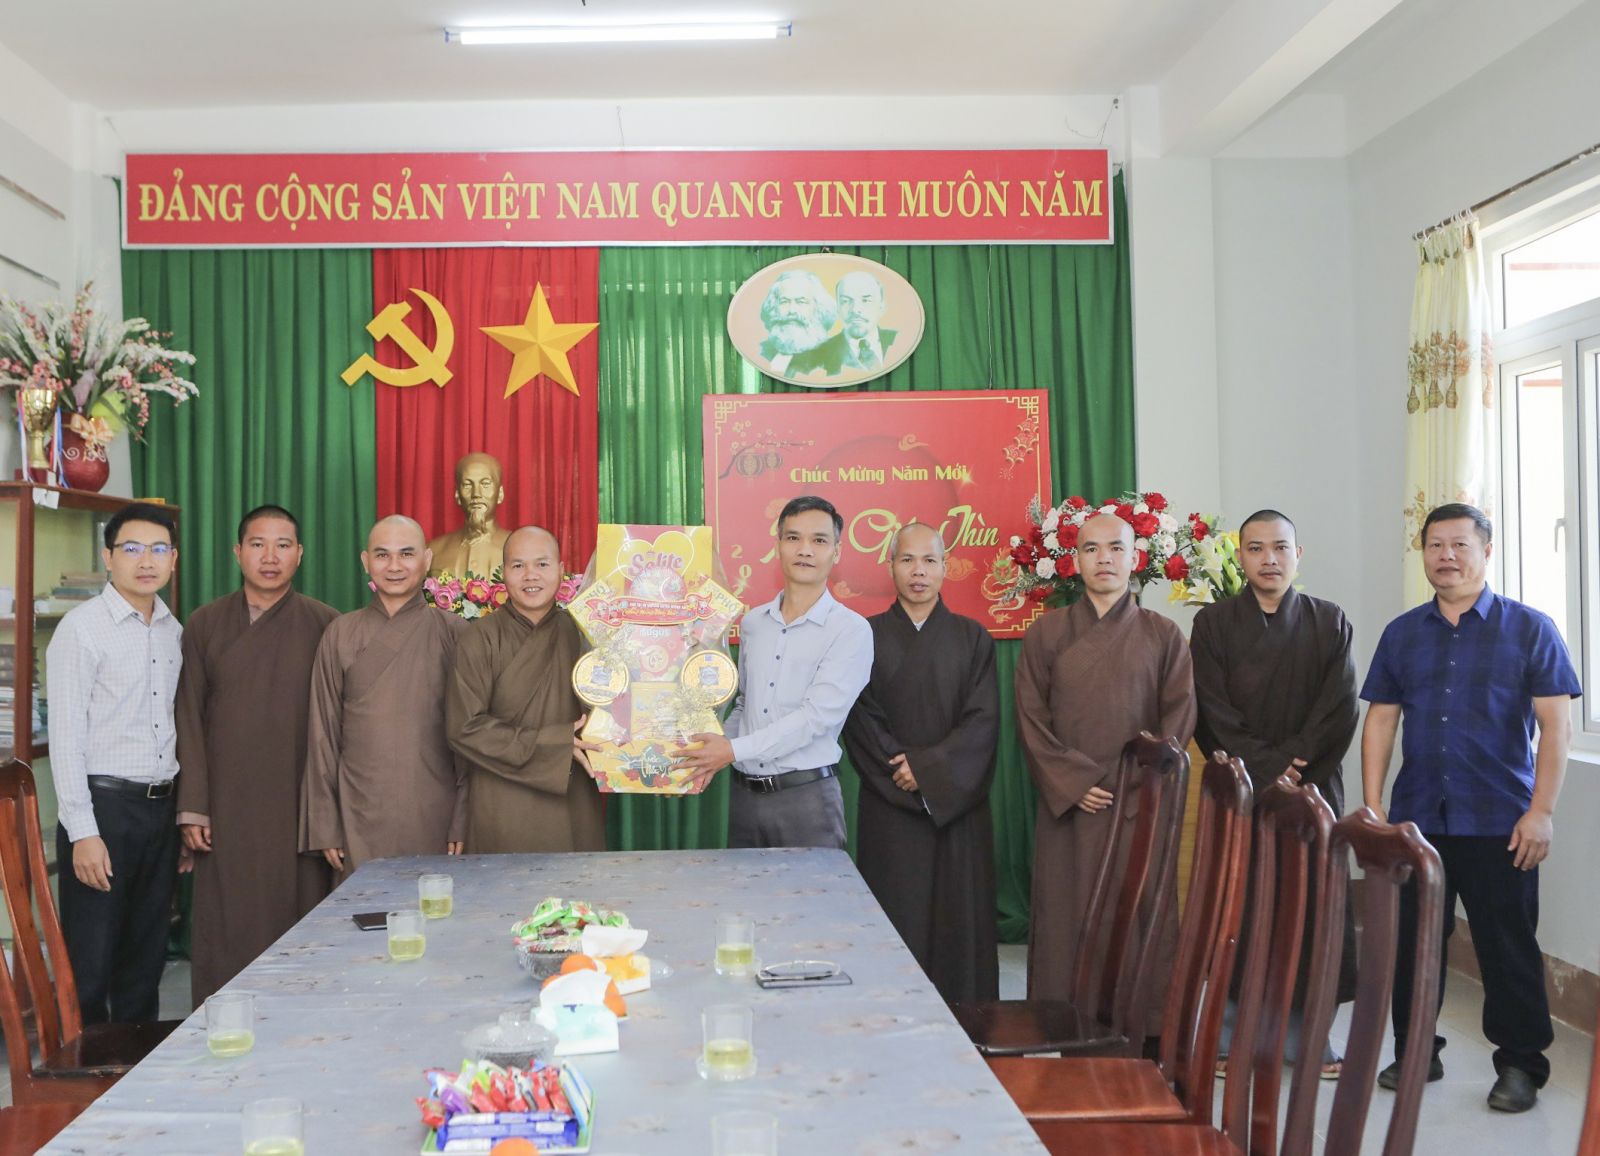     Ông Nguyễn Nam Nhật - Phó Ban Tôn giáo tỉnh đại điện nhận quà chúc mừng